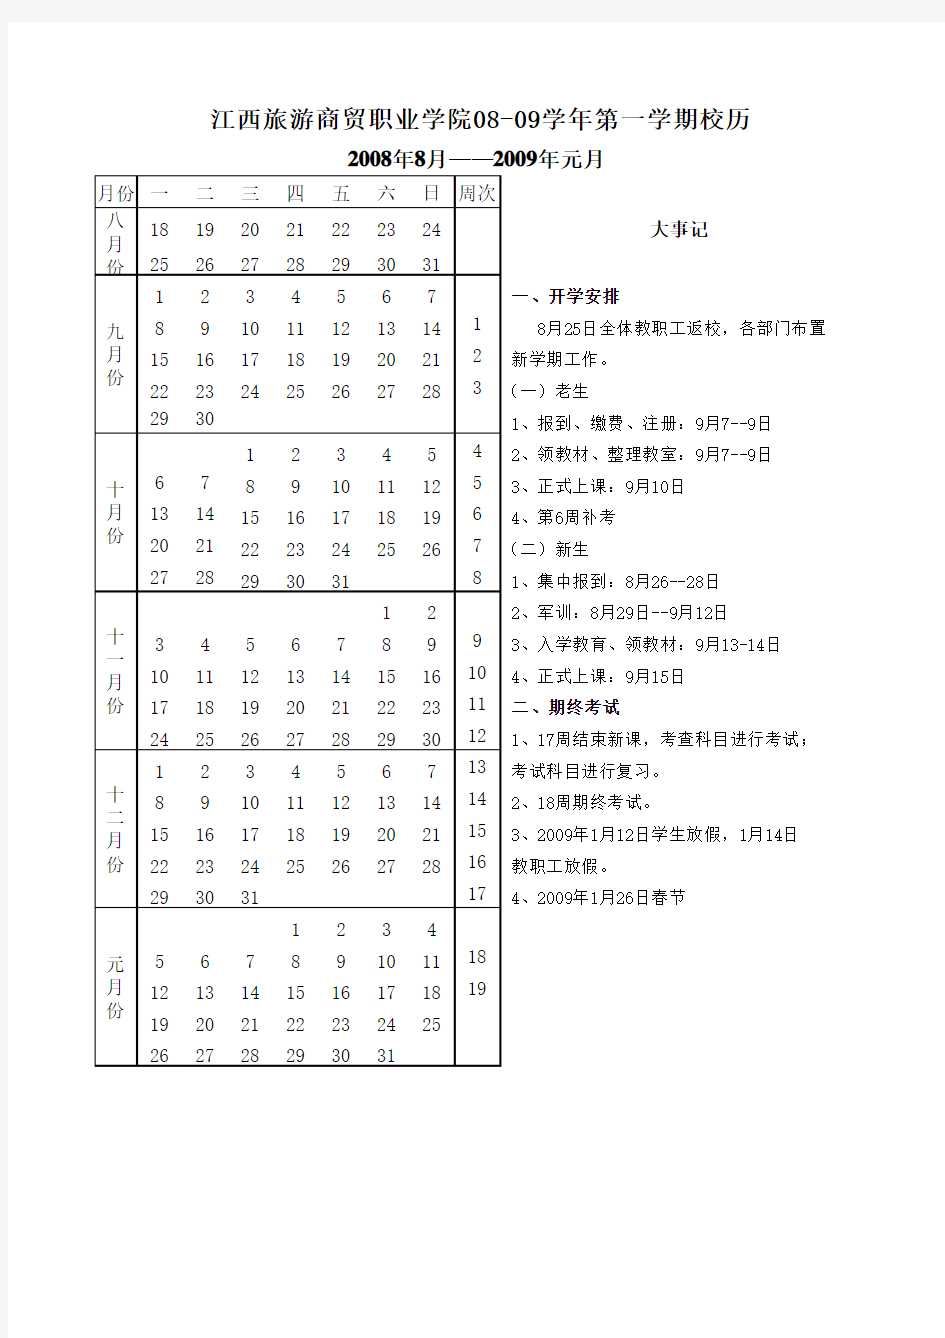 江西旅游商贸职业学院08-09学年第一学期校历xls-Sheet1